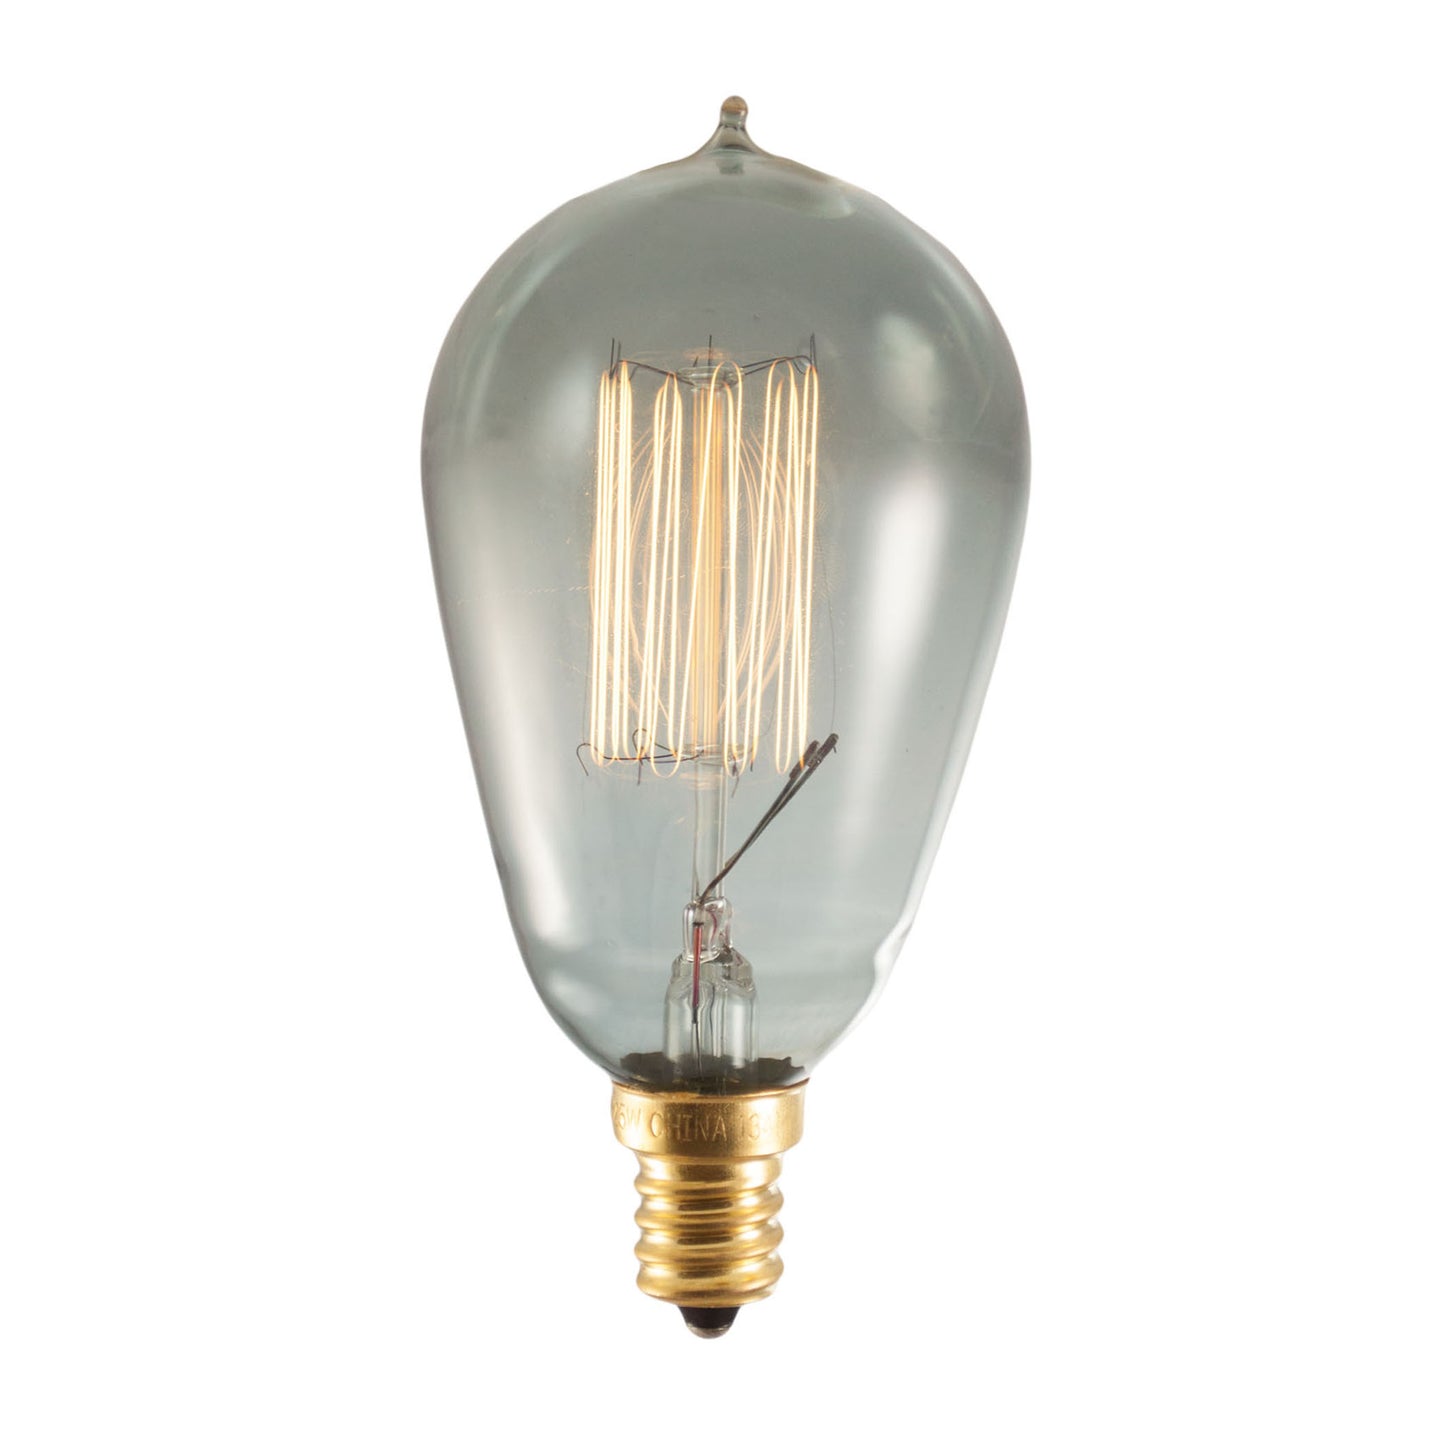 Bulbrite NOS25ST15/SQ/E12/SMK 25 Watt Nostalgic Edison ST15 bulb, Vintage Thread Filament, Candelabra Base, Smoke Finish